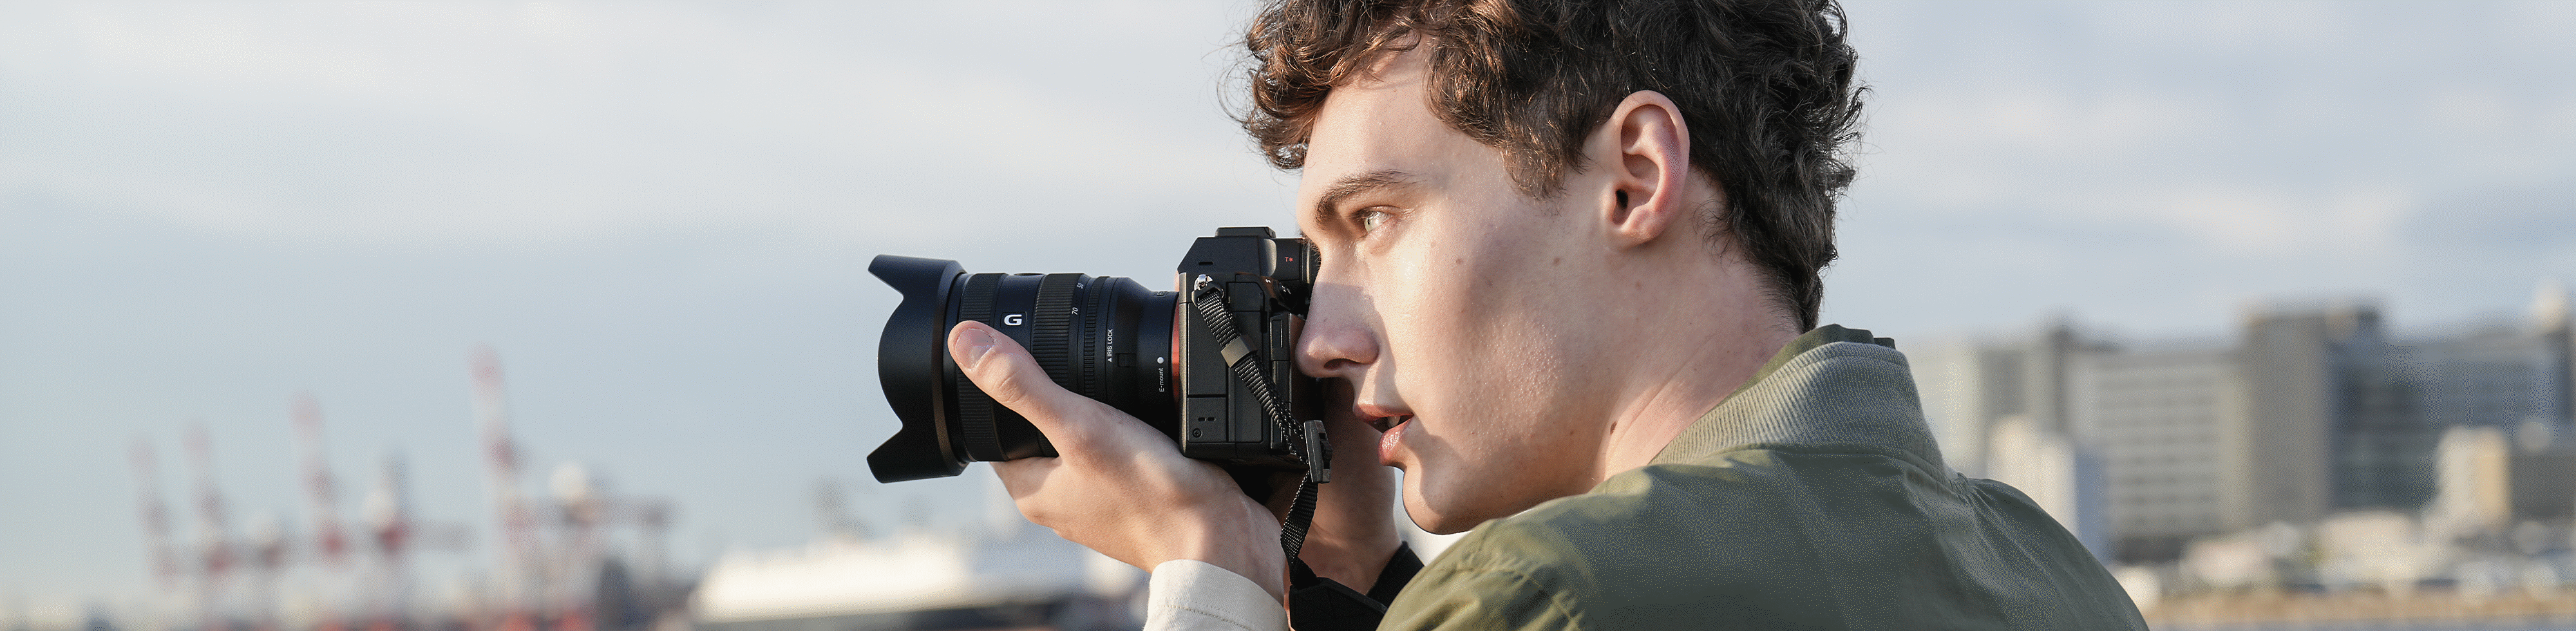 Mies kuvaa rannikolla käyttäen kädessä pideltävää kameraa ja etsintä